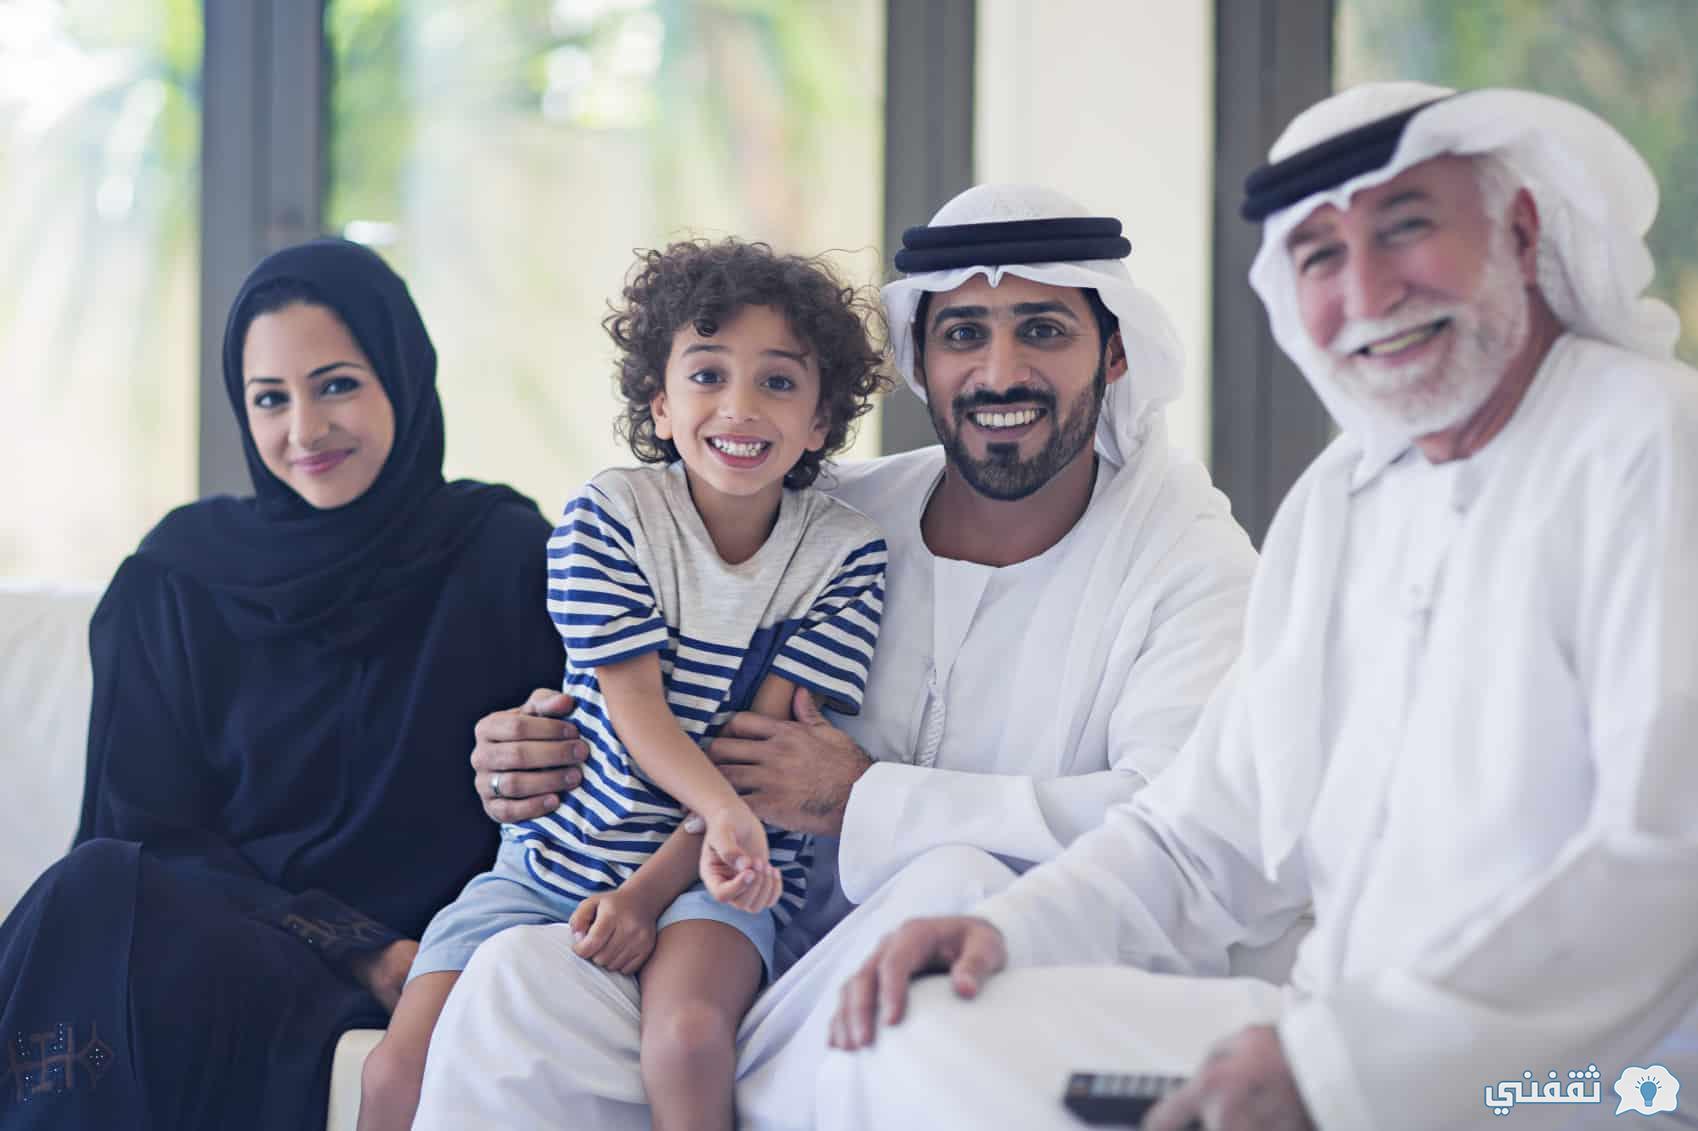 UAE تسجيل وصرف بدل التضخم mocd.gov.ae وزارة تنمية المجتمع (الوقود - الكهرباء - الماء) مكرمة حاكم الإمارات